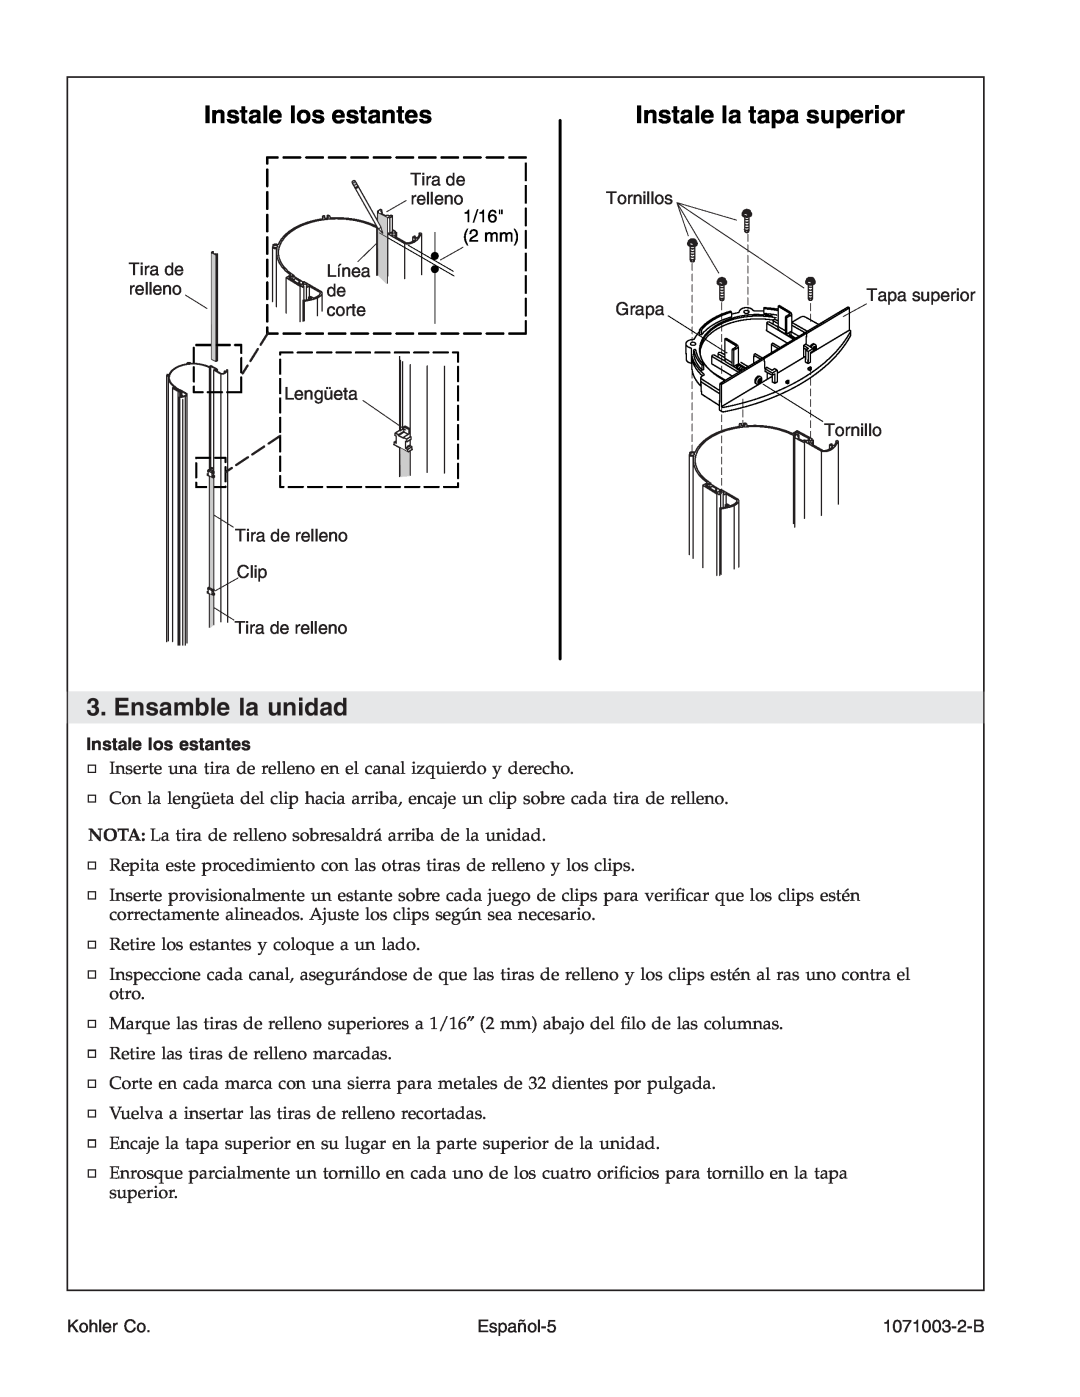 Kohler 1071003-2-B, K-1840 manual Instale los estantes, Instale la tapa superior, Ensamble la unidad 